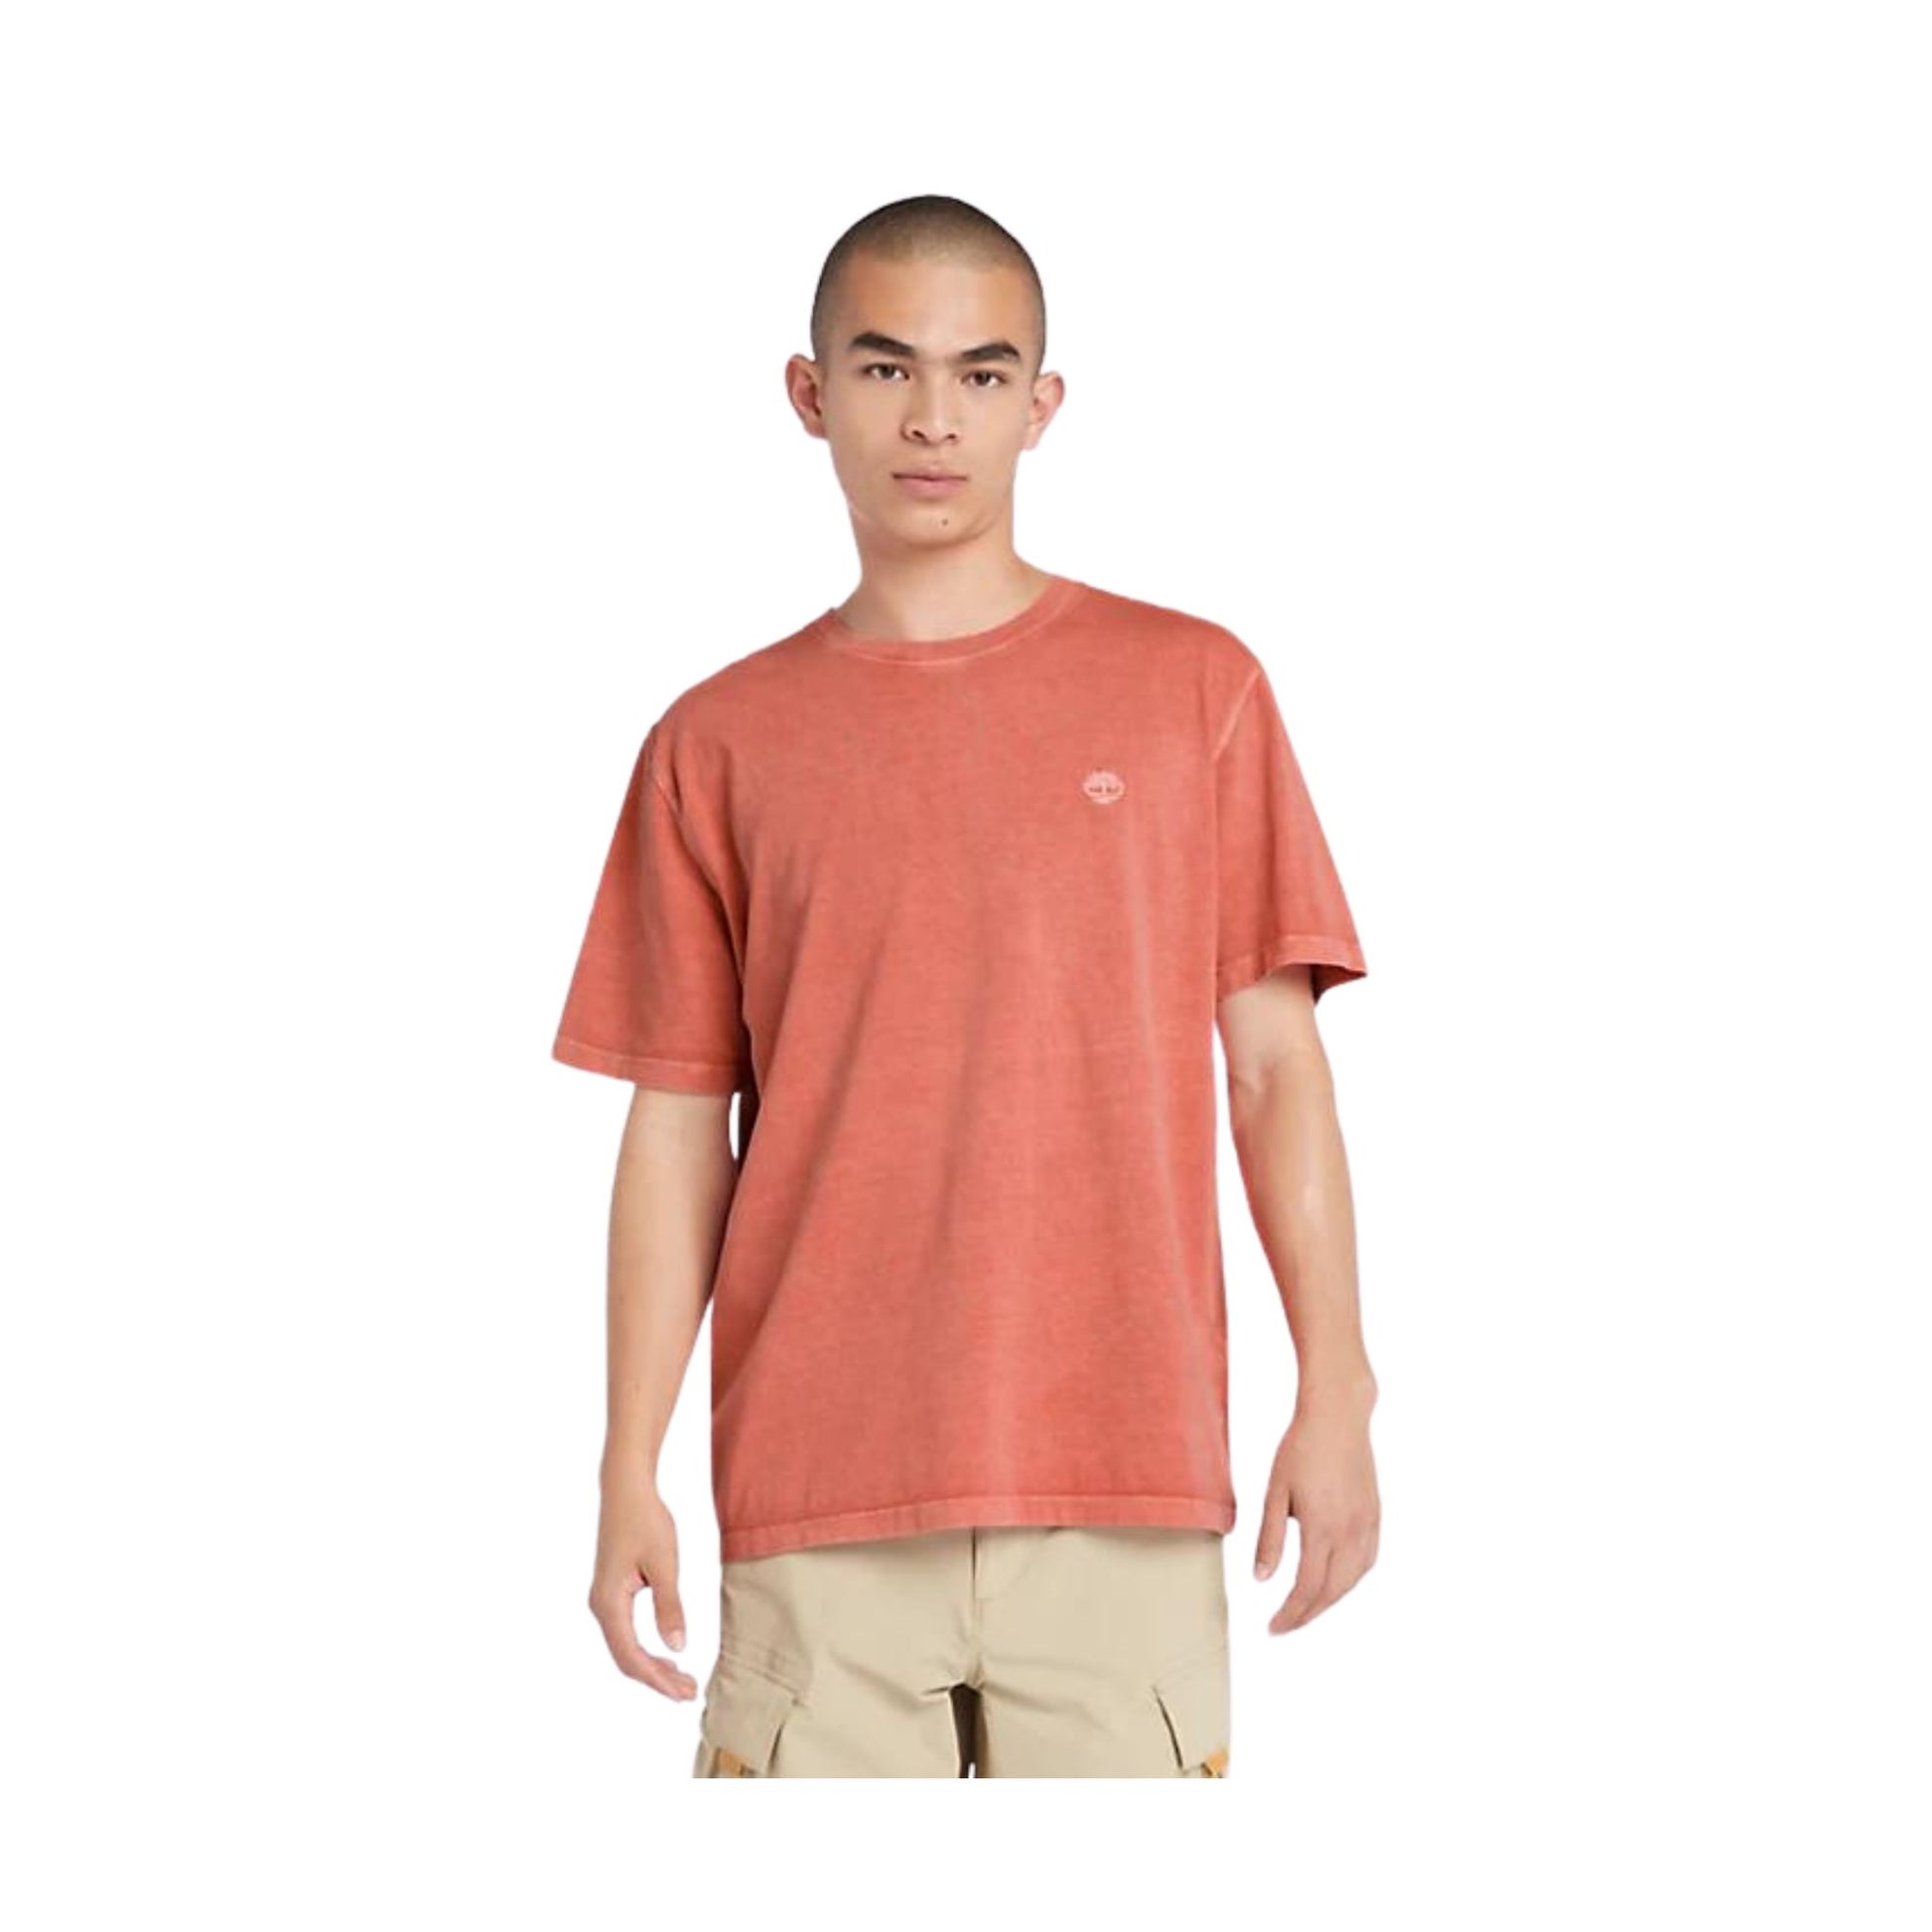 Modello con T-shirt in cotone con logo ricamato sul petto colore Arancione